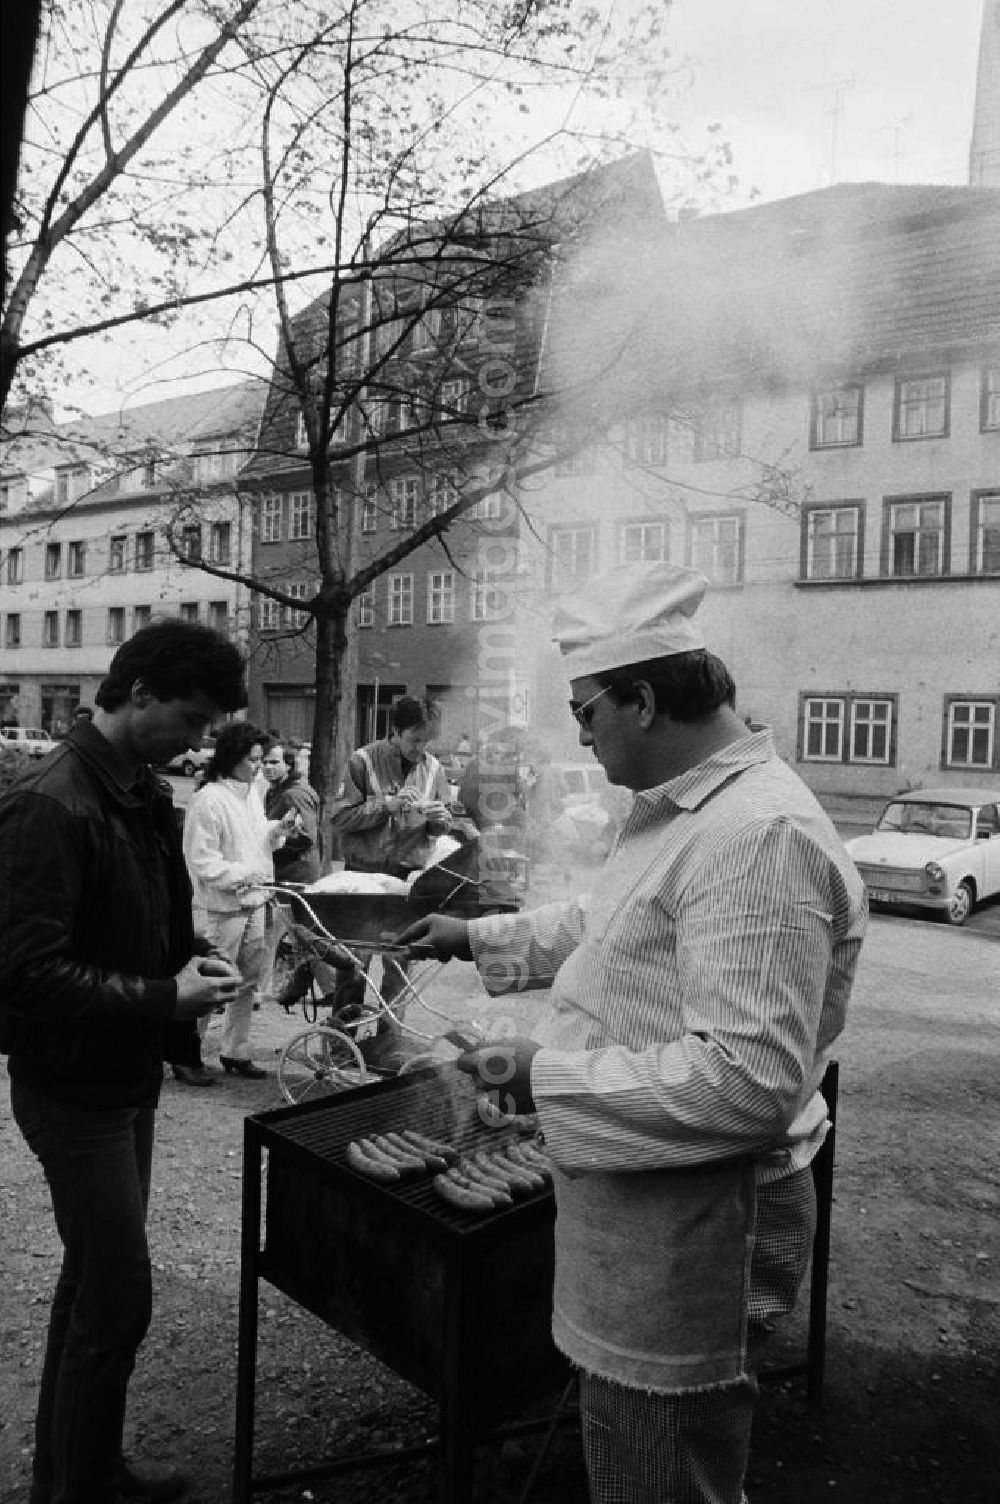 GDR picture archive: Erfurt - Unweit der berühmten Krämerbrücke in Erfurt werden Rostbratwürste verkauft. Koch mit Kochmütze und Kochkleidung steht vor einem Grill mit Bratwürsten darauf. Im Hintergrund parkt ein Auto vom Typ Trabant 601. Die sogenannten Roster sind eine Spezialität aus Thüringen, die erstmals 14